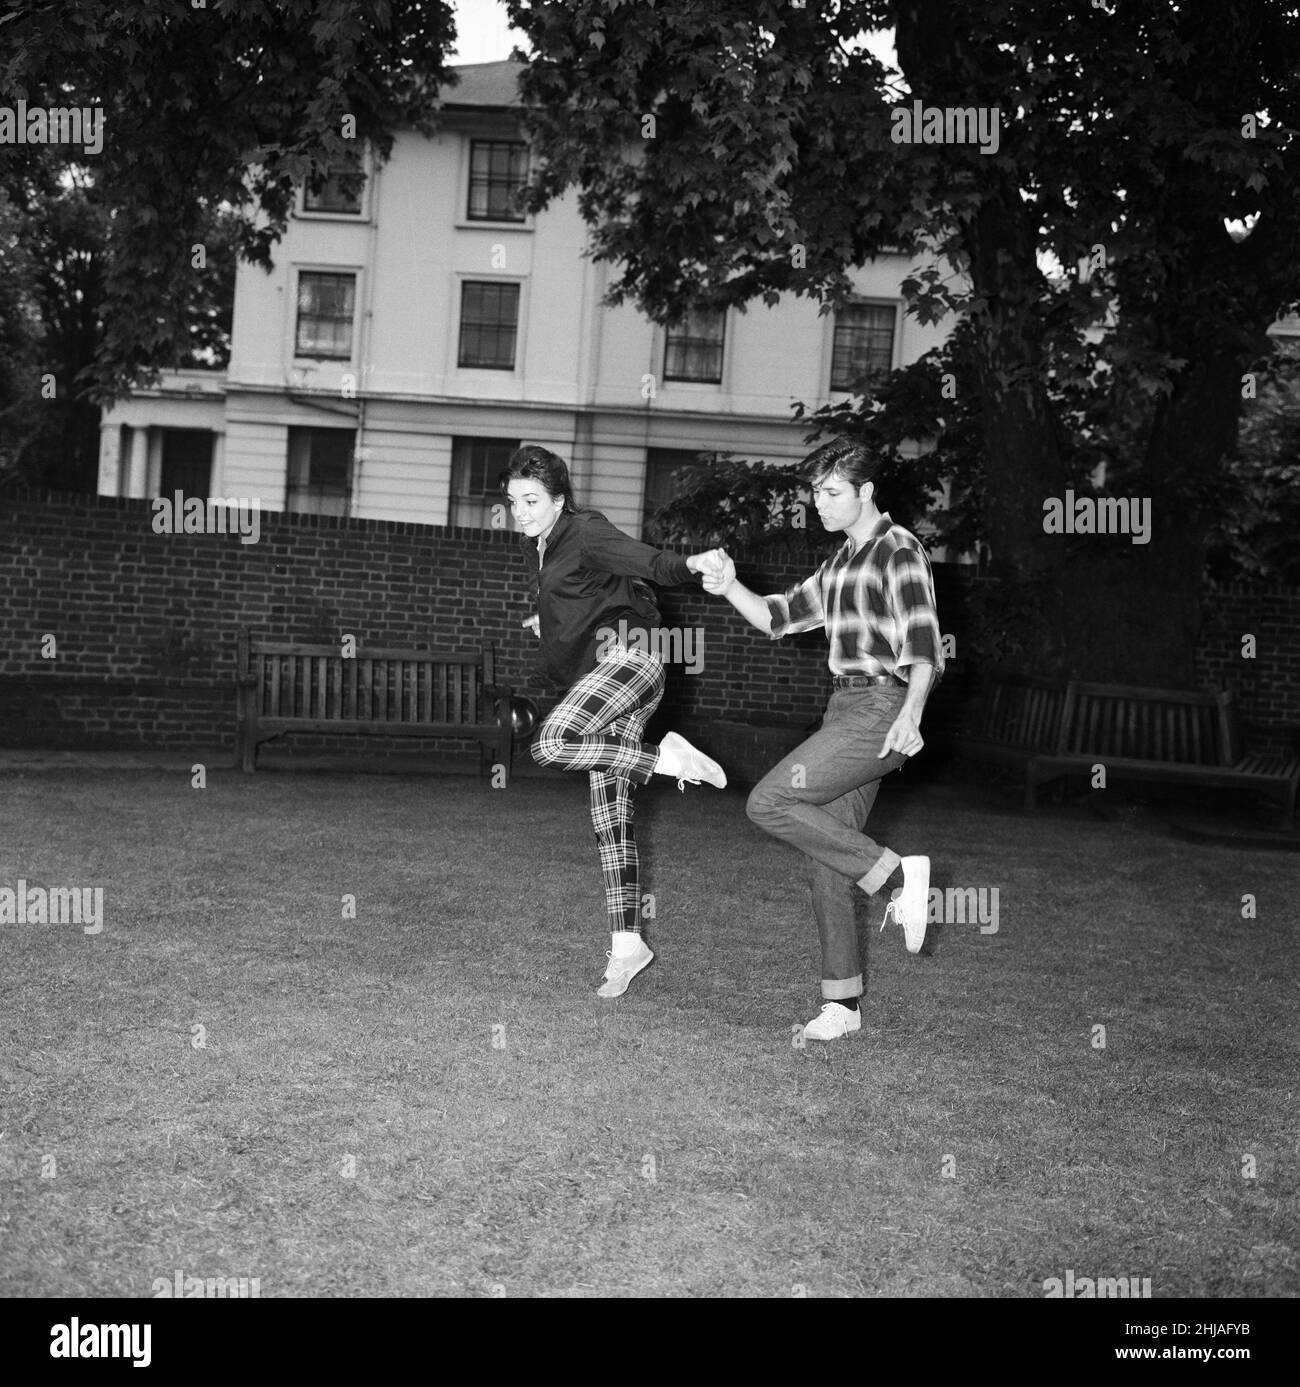 Liza Minnelli, die 17-jährige Tochter von Judy Garland, ist in London, um an einem ATV-Spektakel mit Cliff Richard und den Schatten teilzunehmen, wo sie als besondere Gastkünstlerin singt und tanzt. Abgebildet sind Liza Minnelli und Cliff Richard. 17th. Juni 1964. Stockfoto